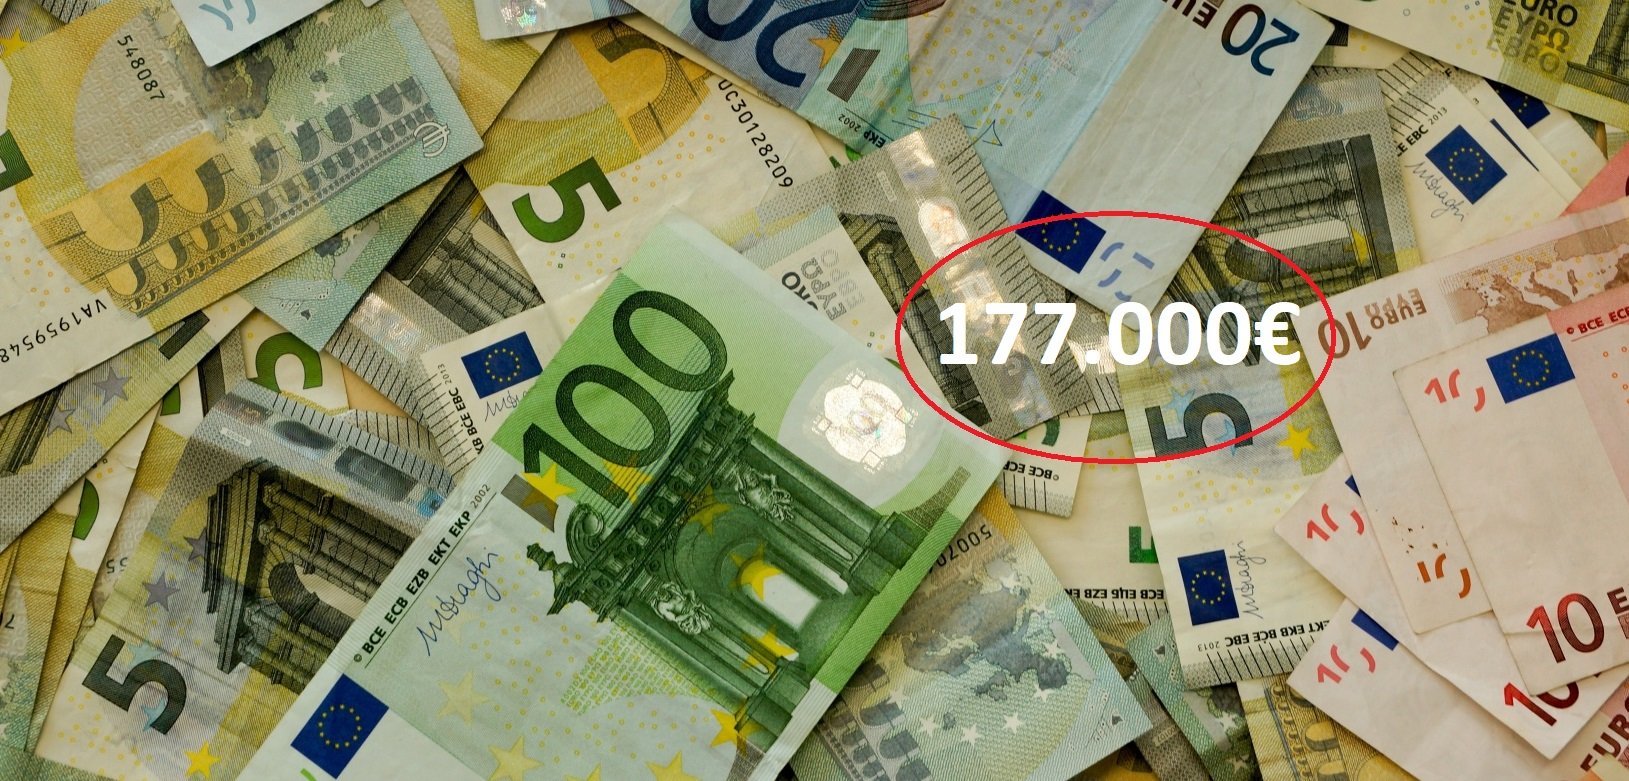 euros billets de banque 1456109137rjo.jpg?resize=1200,630 - Il encaisse 177 000 euros par erreur et disparait dans la nature du jour au lendemain